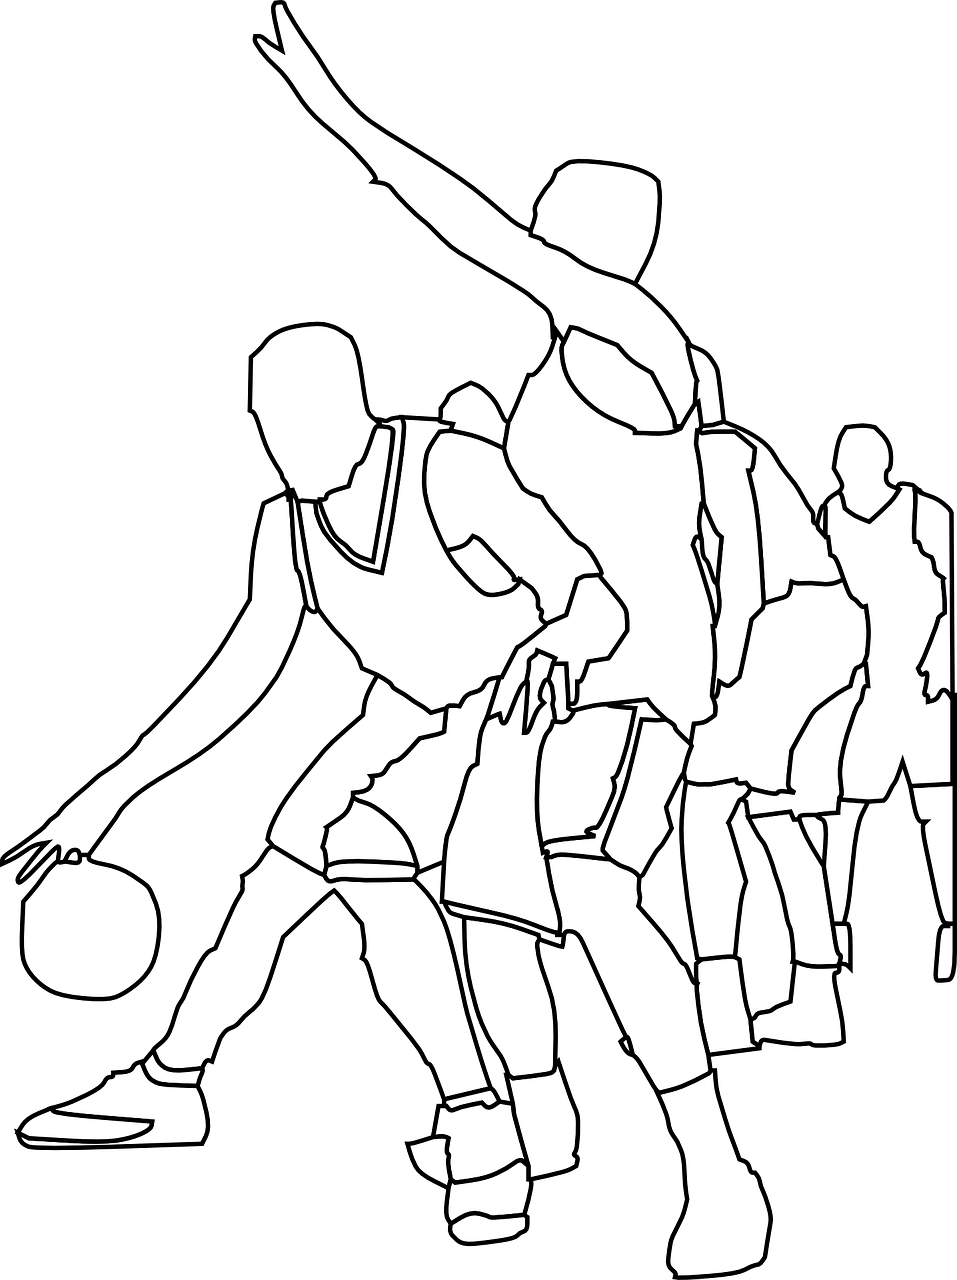 Krepšinis, Žaidėjai, Žaidimas, Komanda, Dribbles, Veiksmas, Sportas, Varzybos, Sportininkai, Judėjimas